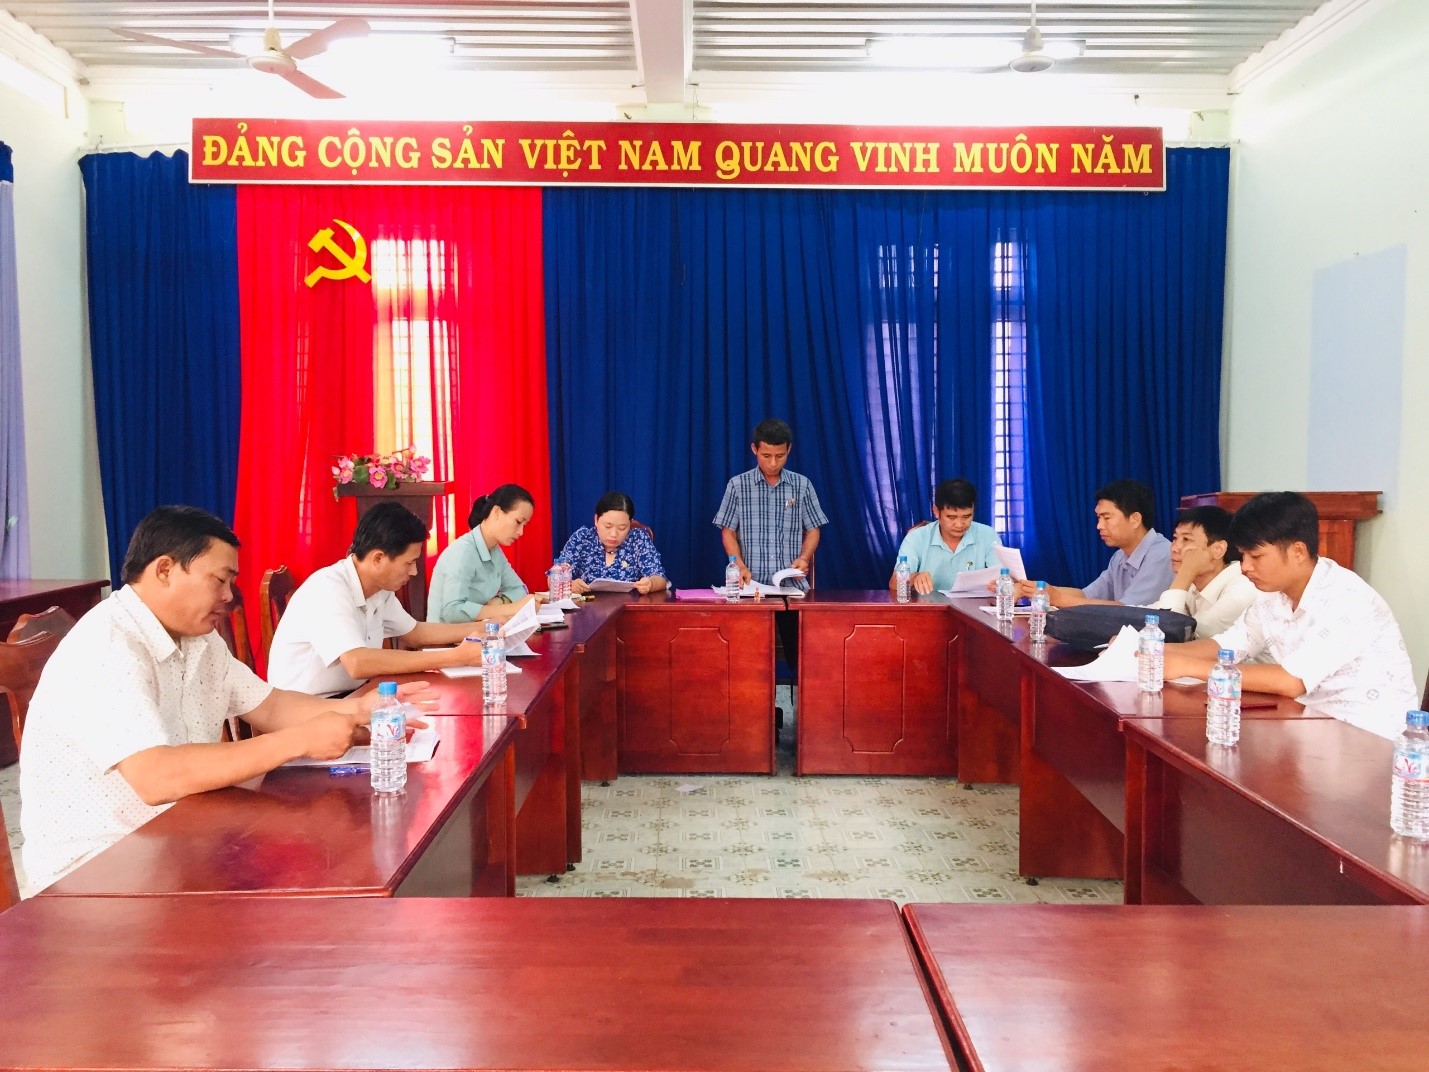 Hội đồng nhân dân xã Thạnh Bắc, huyện Tân Biên: Tổ chức giám sát Trung tâm Văn hóa Thể thao và Học tập cộng đồng xã Thạnh Bắc năm 2020